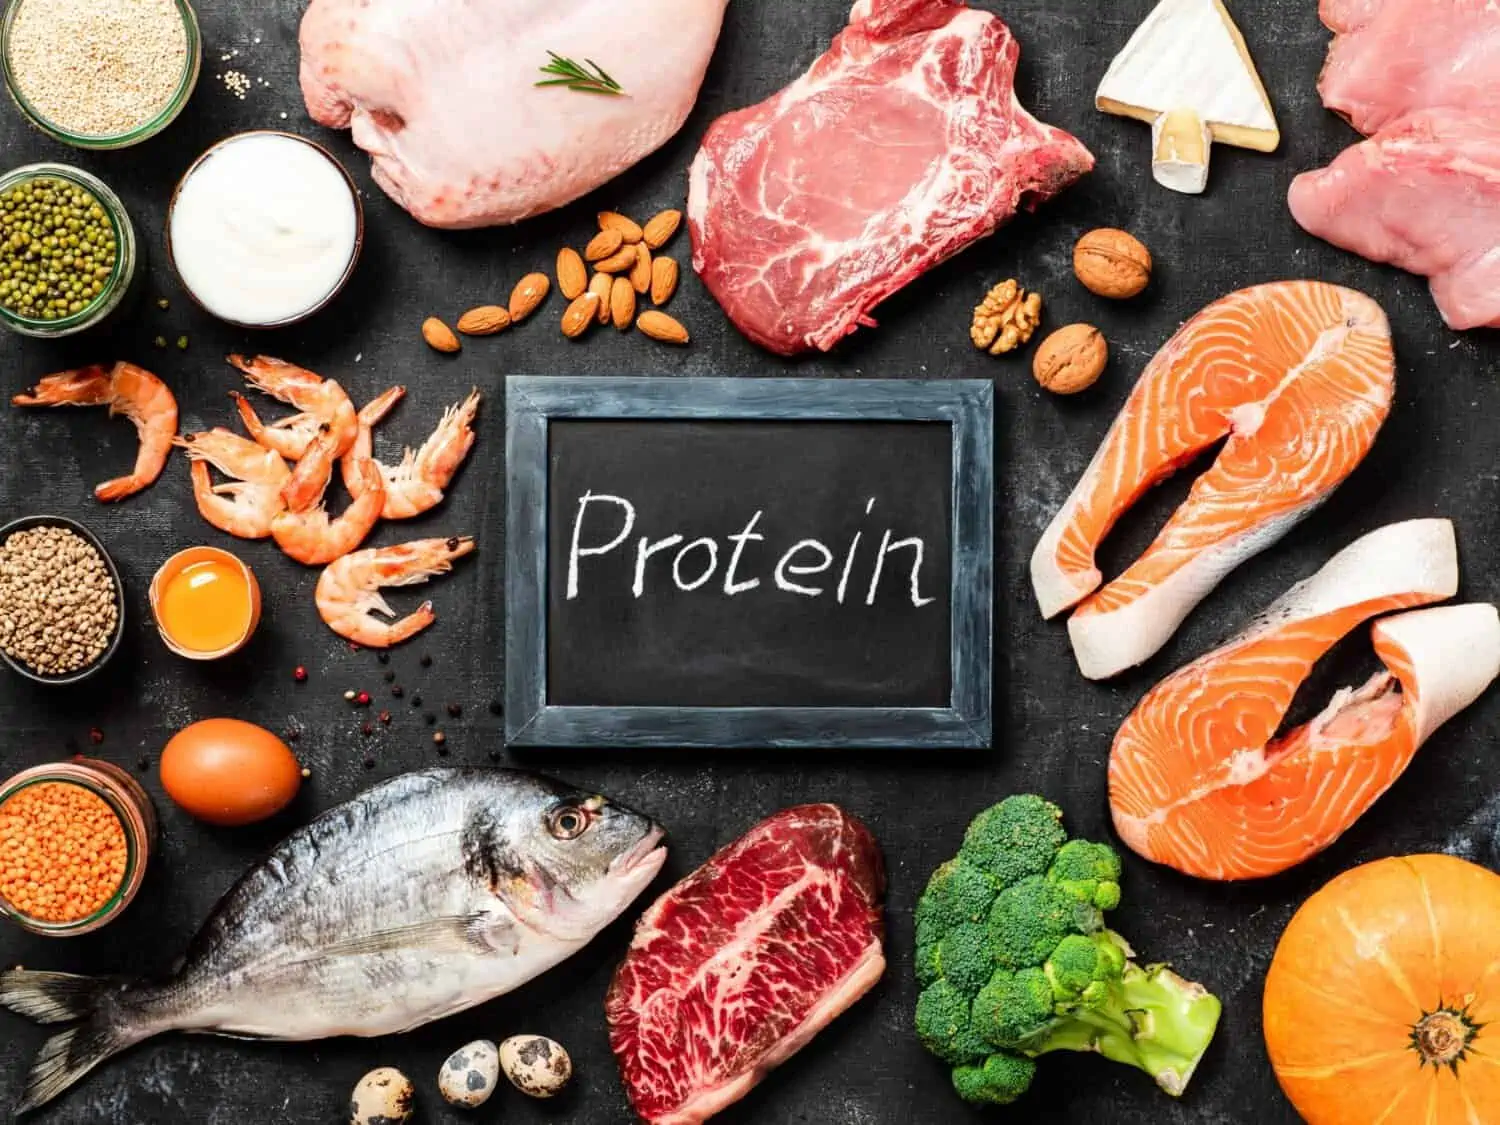 Proteína, o que é e para que serve?